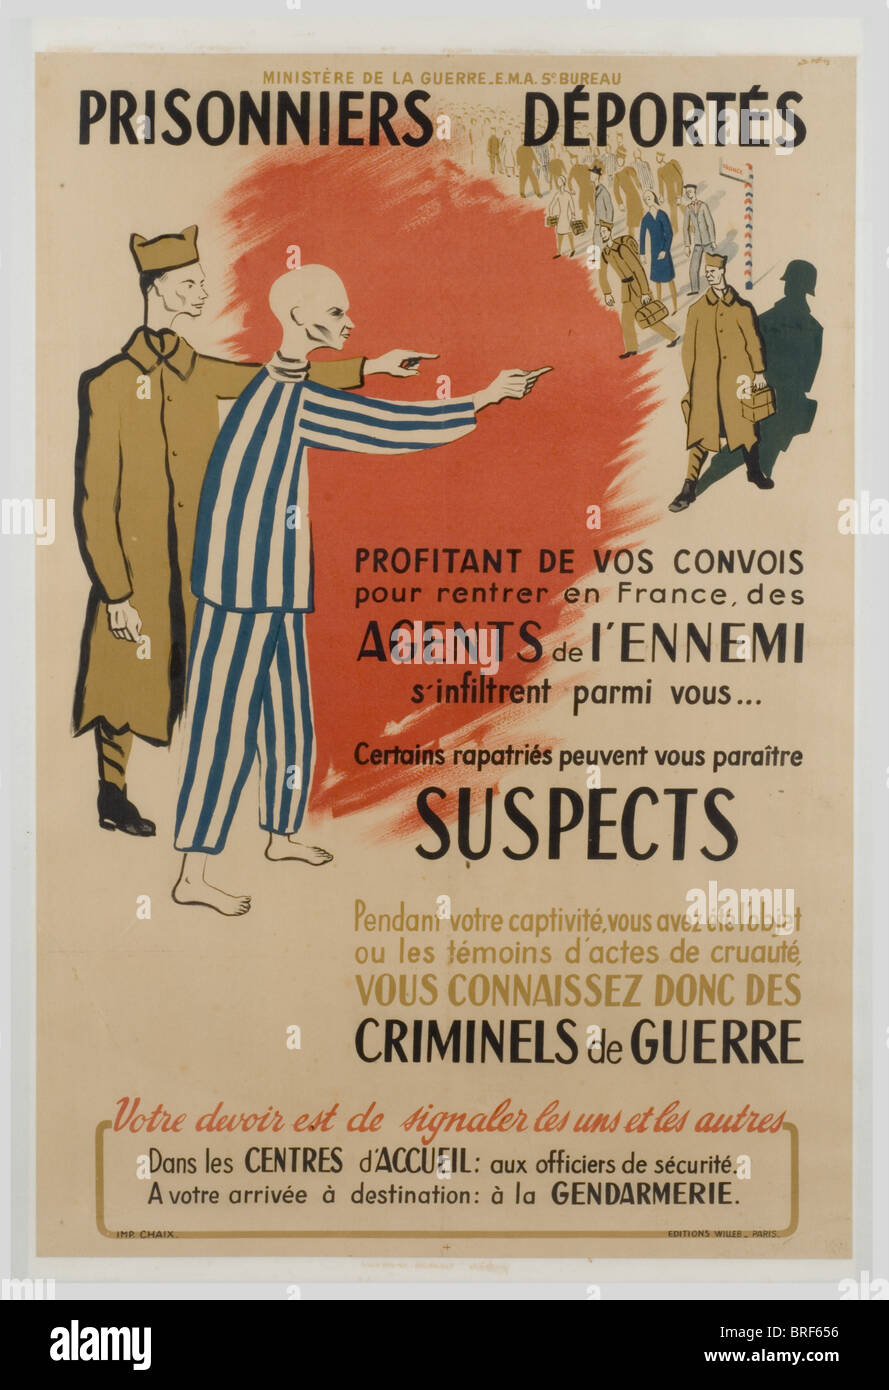 Affiches, Deux affiches en couleurs période Libération., le jour se lève, taille 1,20 x 0,82. 'Prisonniers, déportés, méfiez-vous des infiltrante de l'ennemi', taille 1,20 x 0,82. Encadrées et entoilées., , Foto Stock